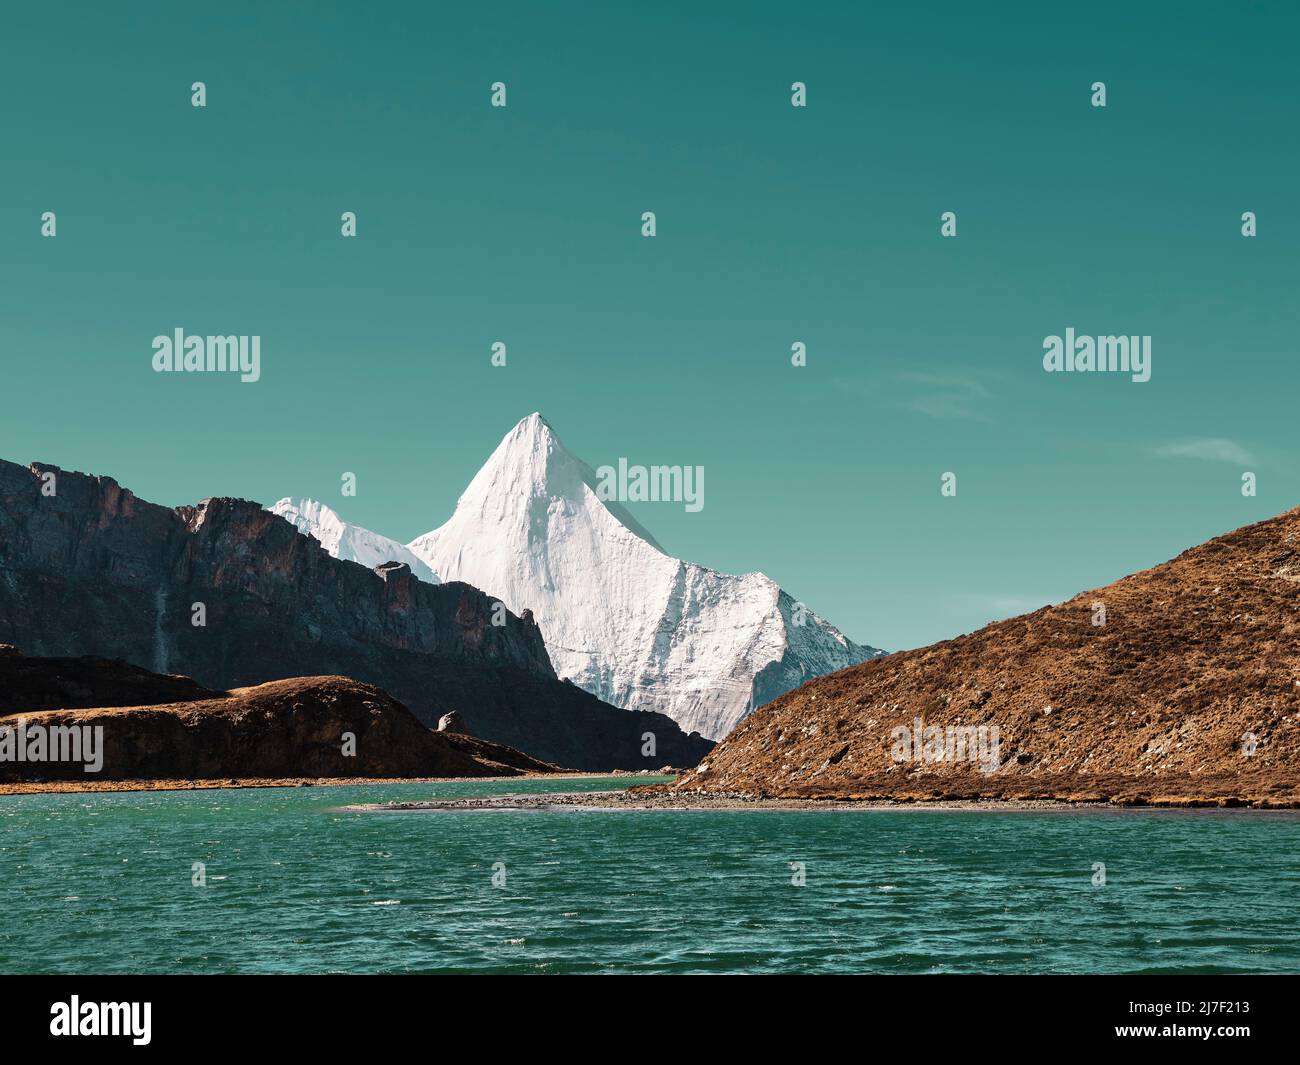 le mont yangmaiyong (ou jampayang en langue tibétaine) et le lac boyongcuo sous le ciel bleu en yading, comté de daocheng, province du sichuan, chine Banque D'Images